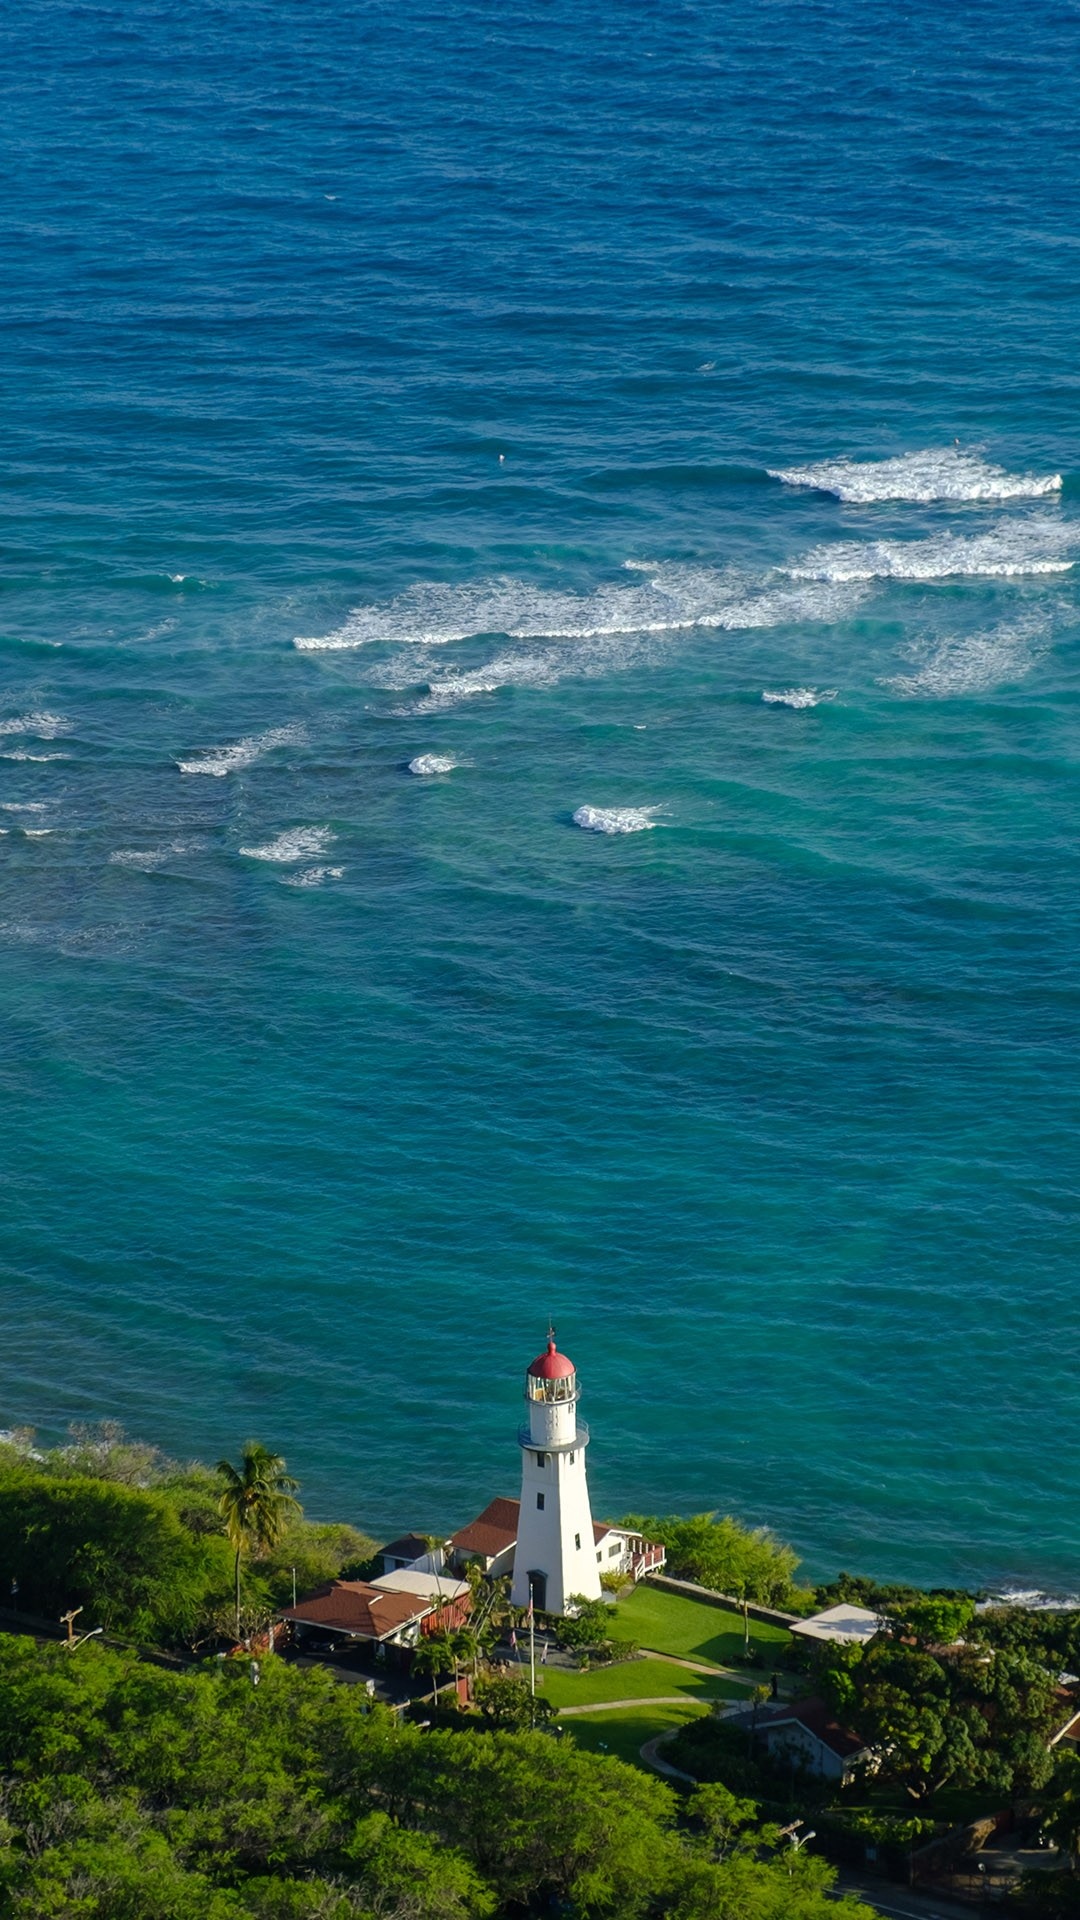 Honolulu: Diamond Head Lighthouse in Honolulu. 1080x1920 Full HD Wallpaper.